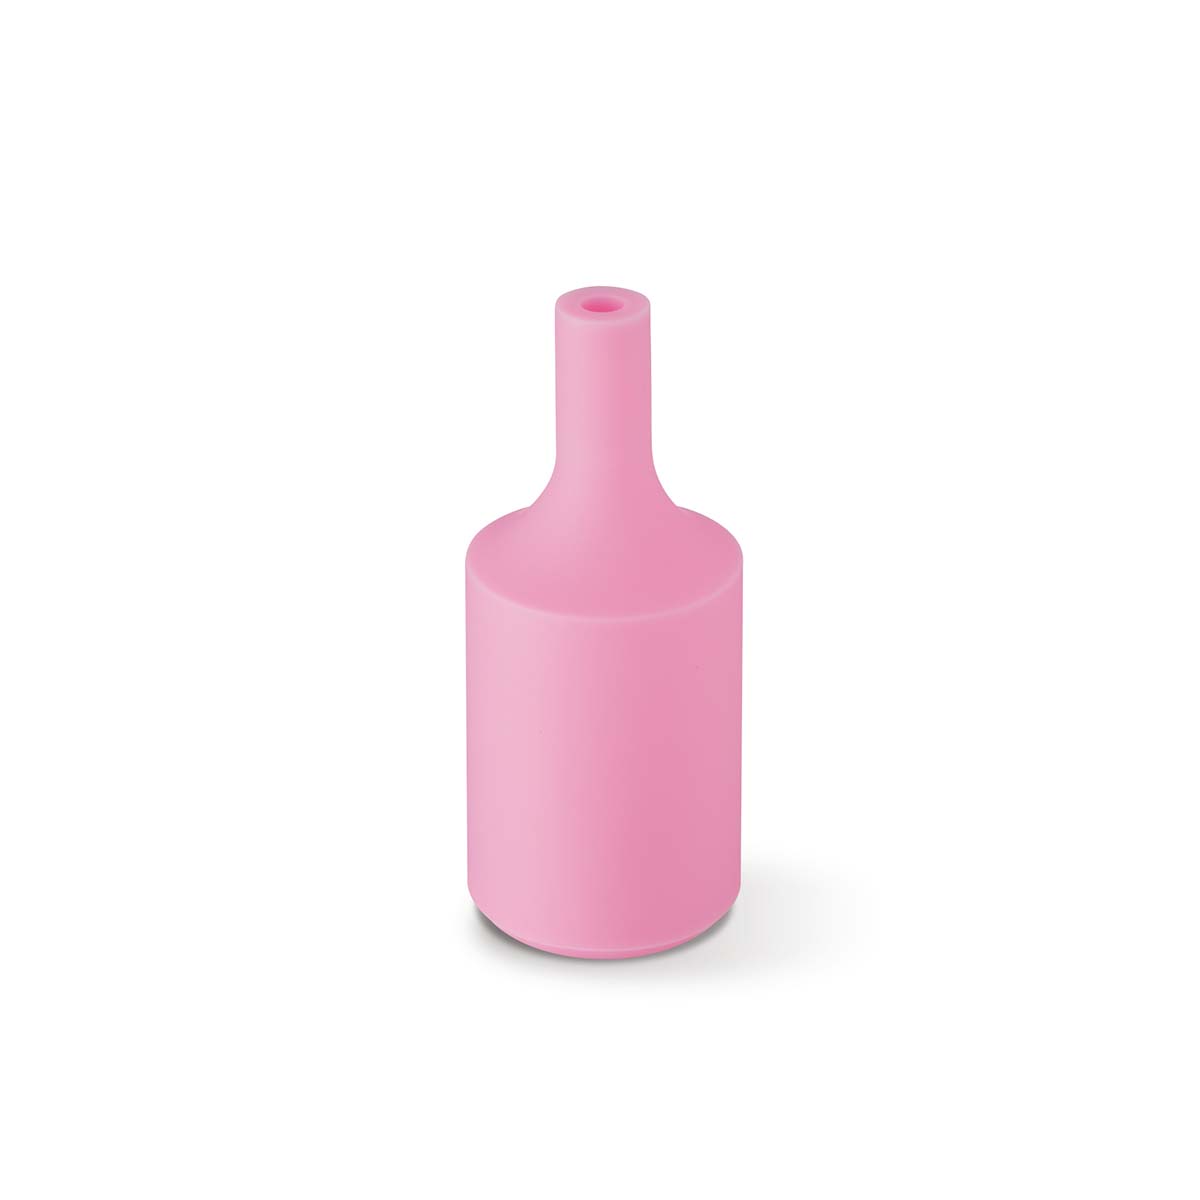 Tangla lighting - TLLH024PK - lamp holder silicon - E27 - bottle - pink